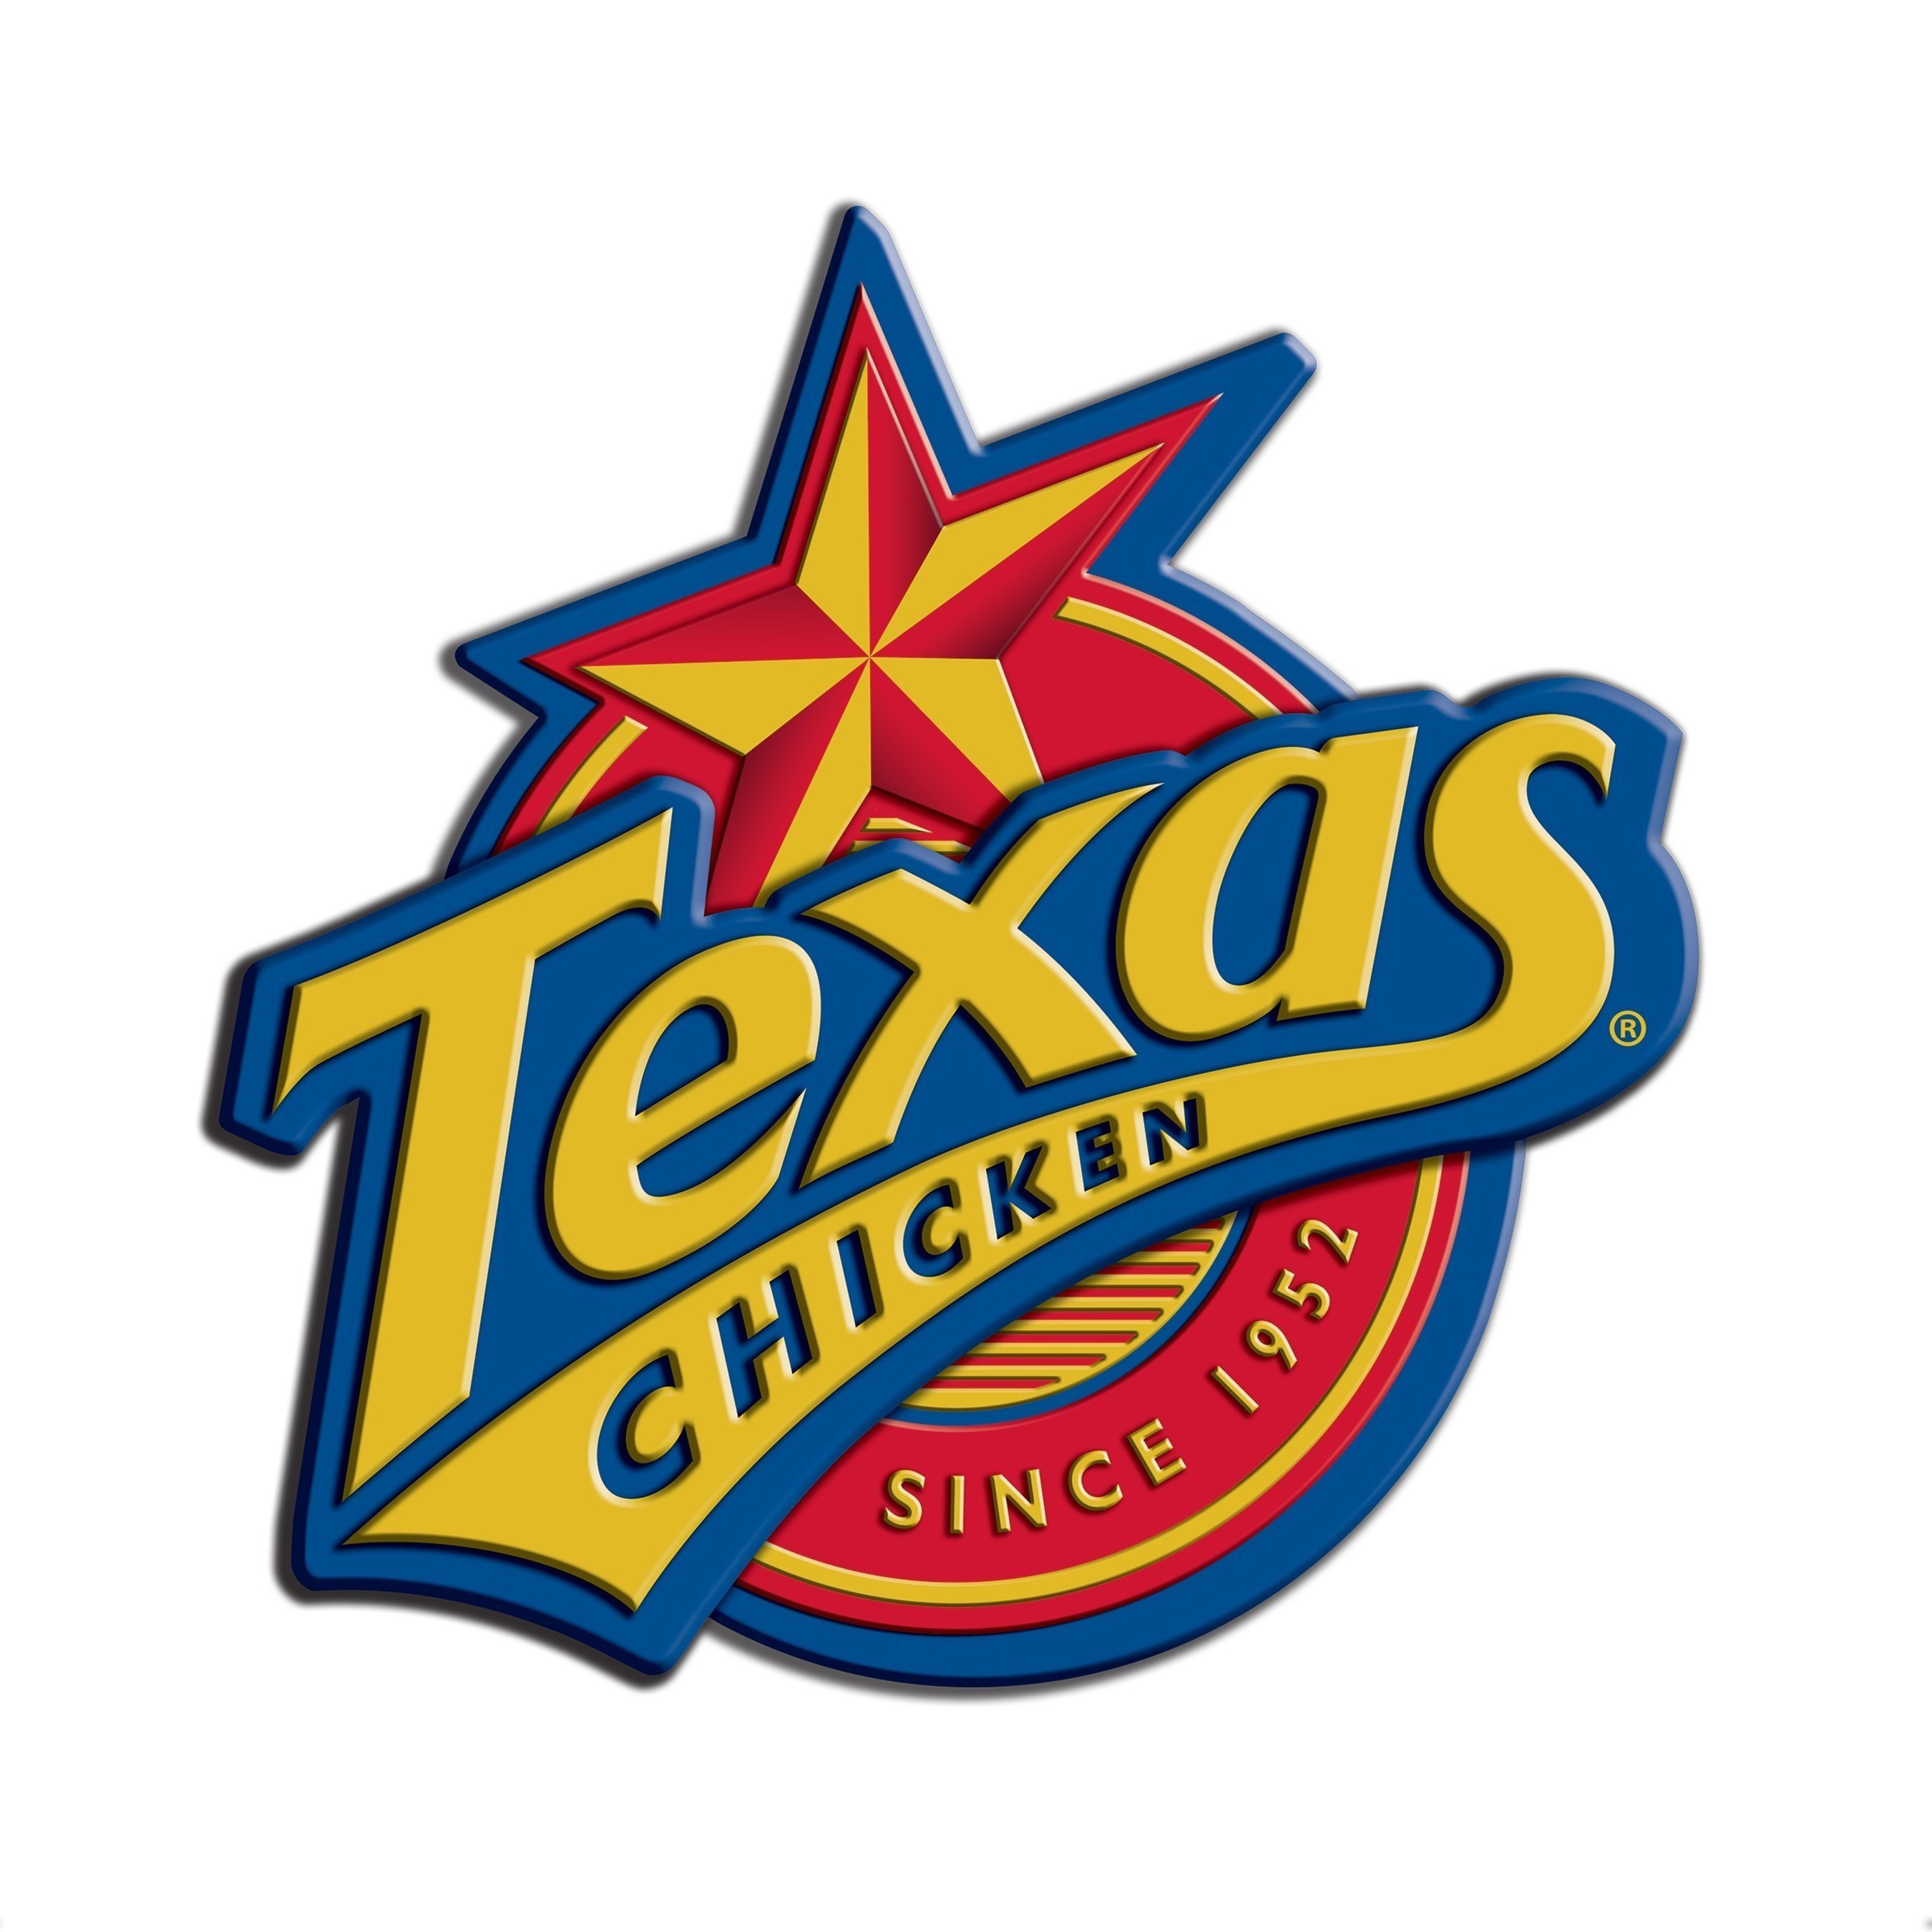 Texas Chicken®/Church's Chicken Around the World in 2015